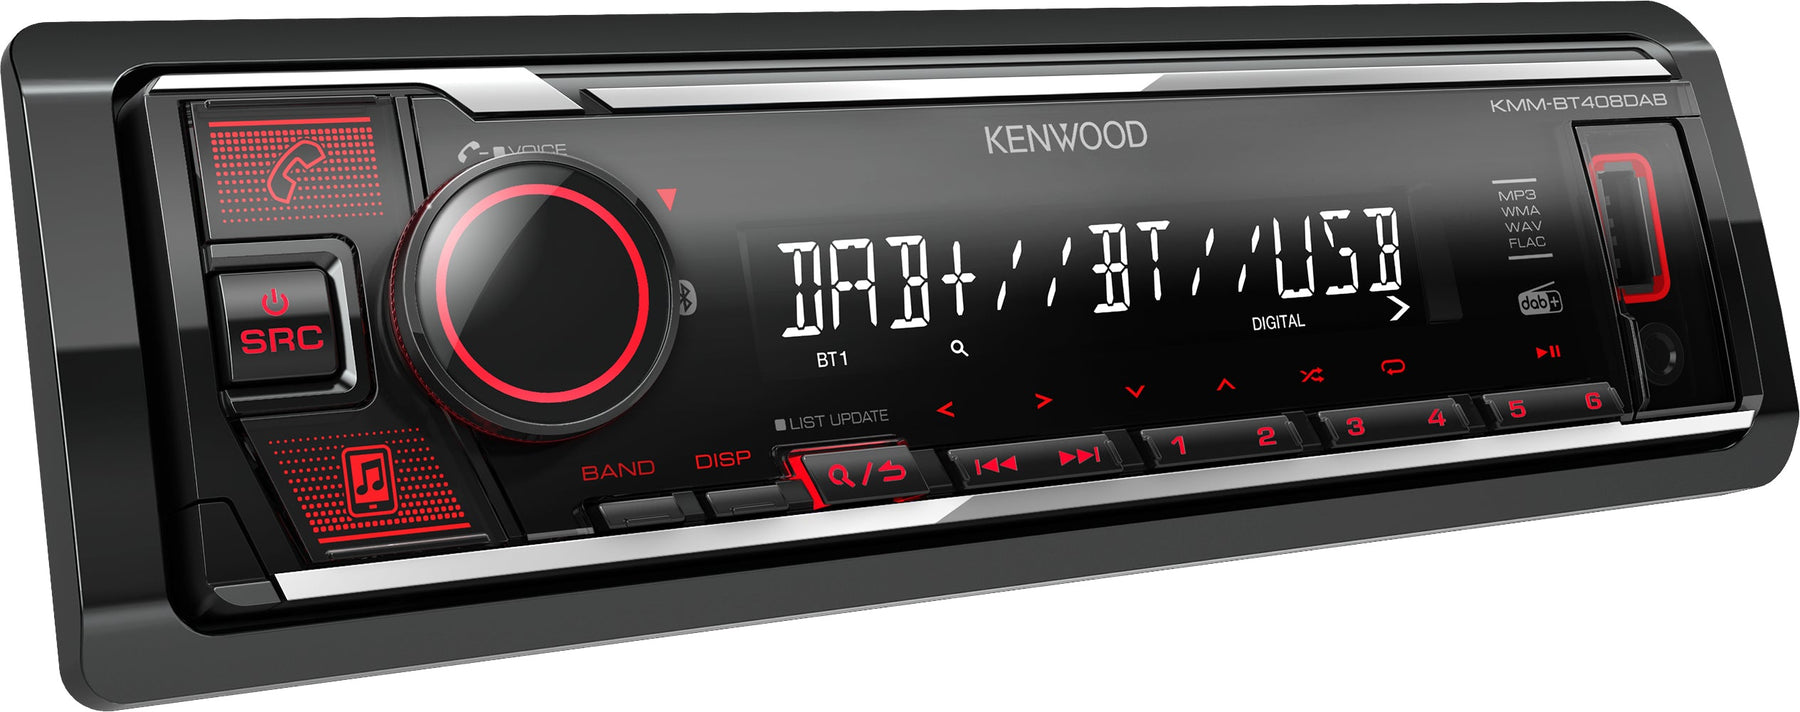 OUTLET Kenwood KMM-BT408DAB Digital Media Receiver con Digital radio DAB+ & Bluetooth